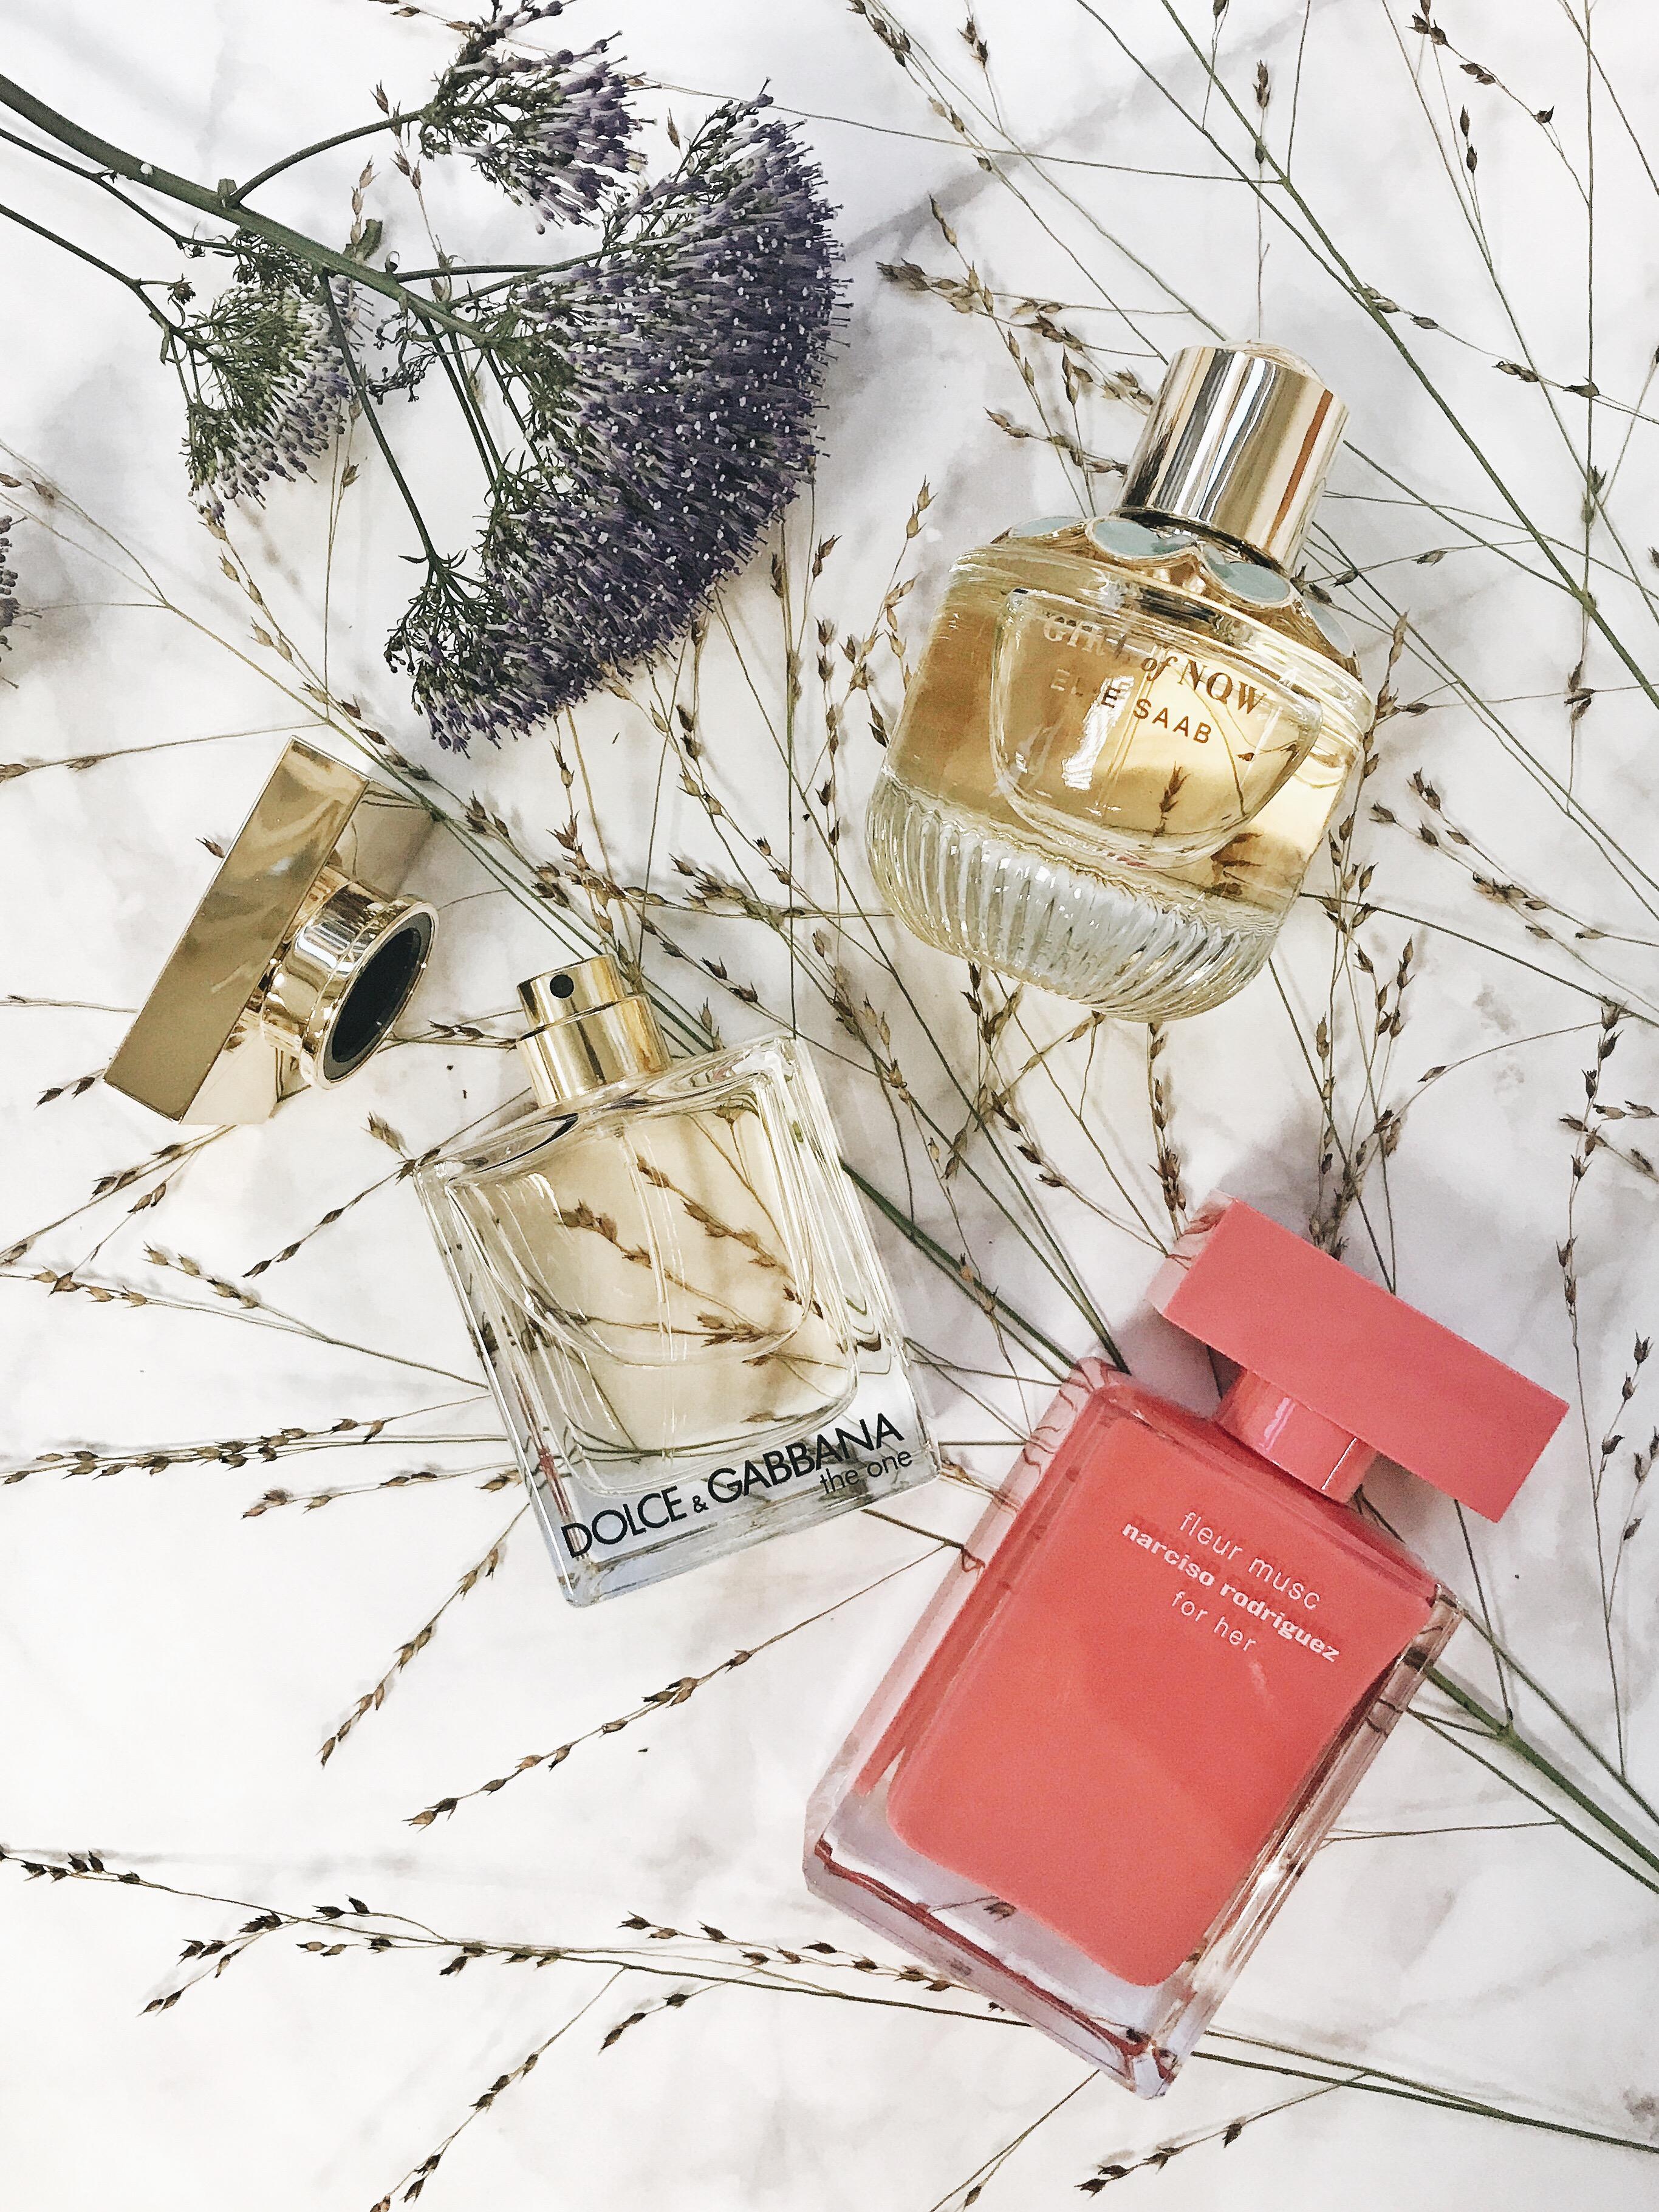 Parfum Dreams! 💕 Für welches würdet ihr euch entscheiden? #eliesaab #dolcegabbana #shiseido #parfum #narcisorodriguez